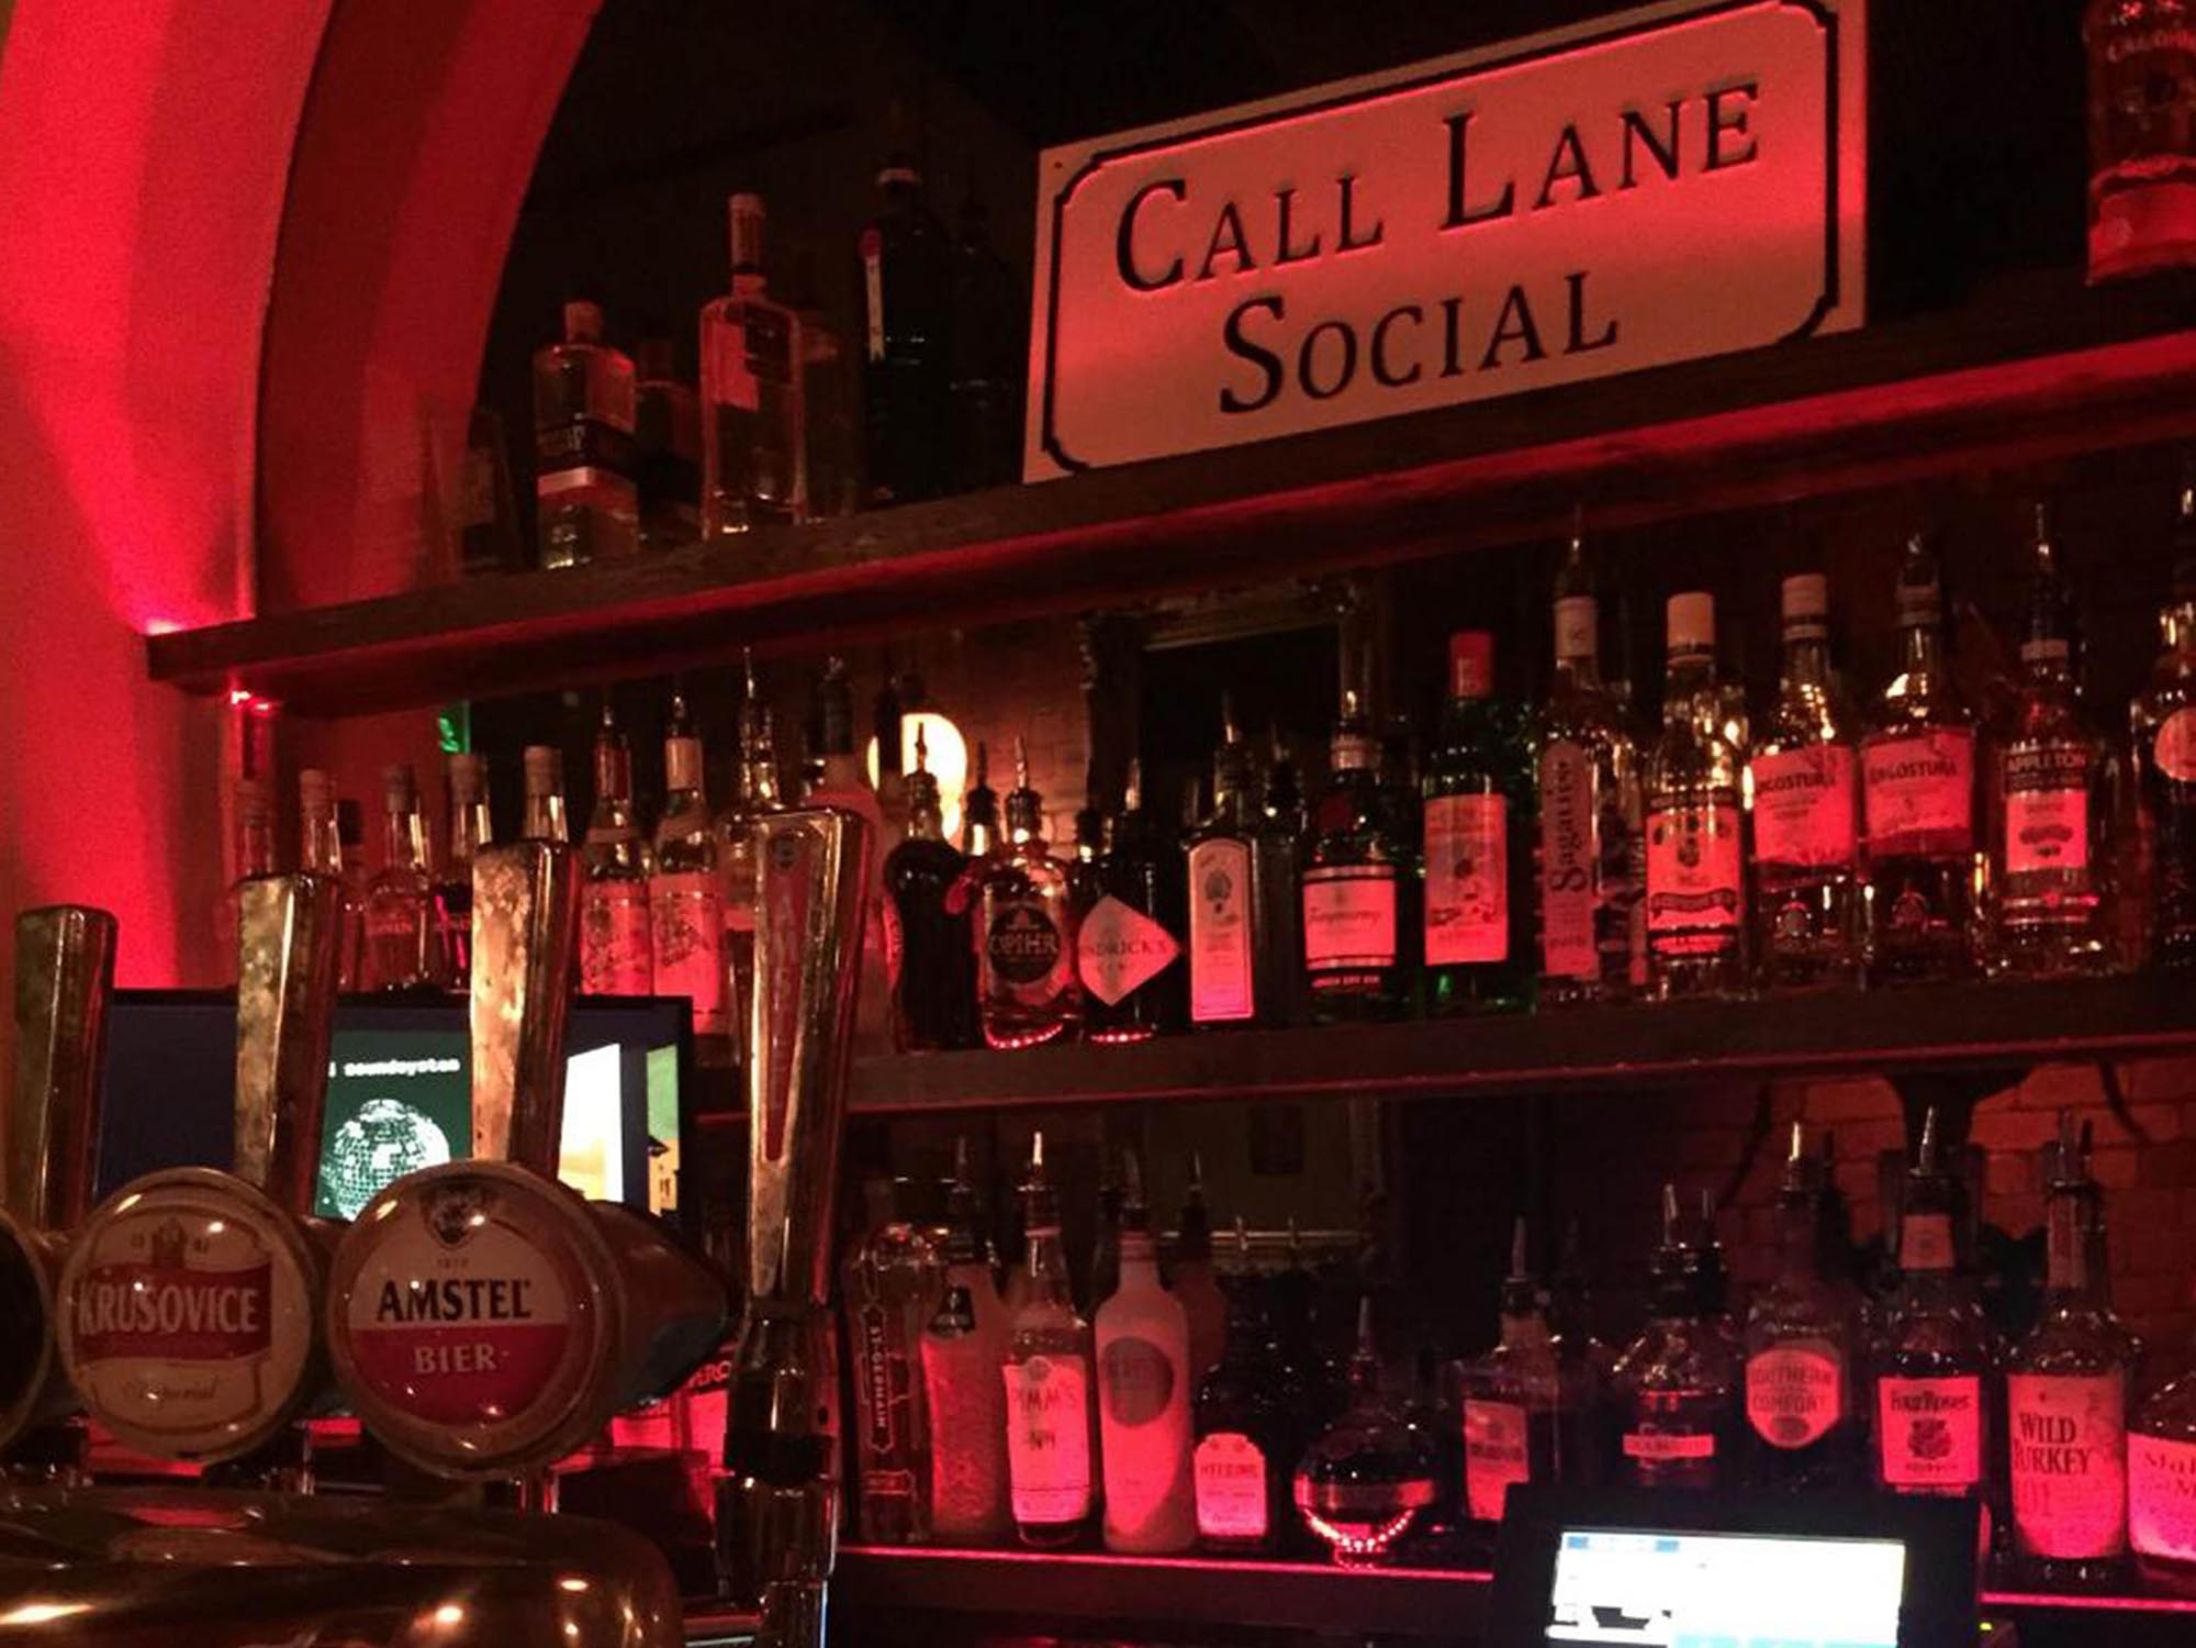 Best Bars in Leeds - Call Lane Social